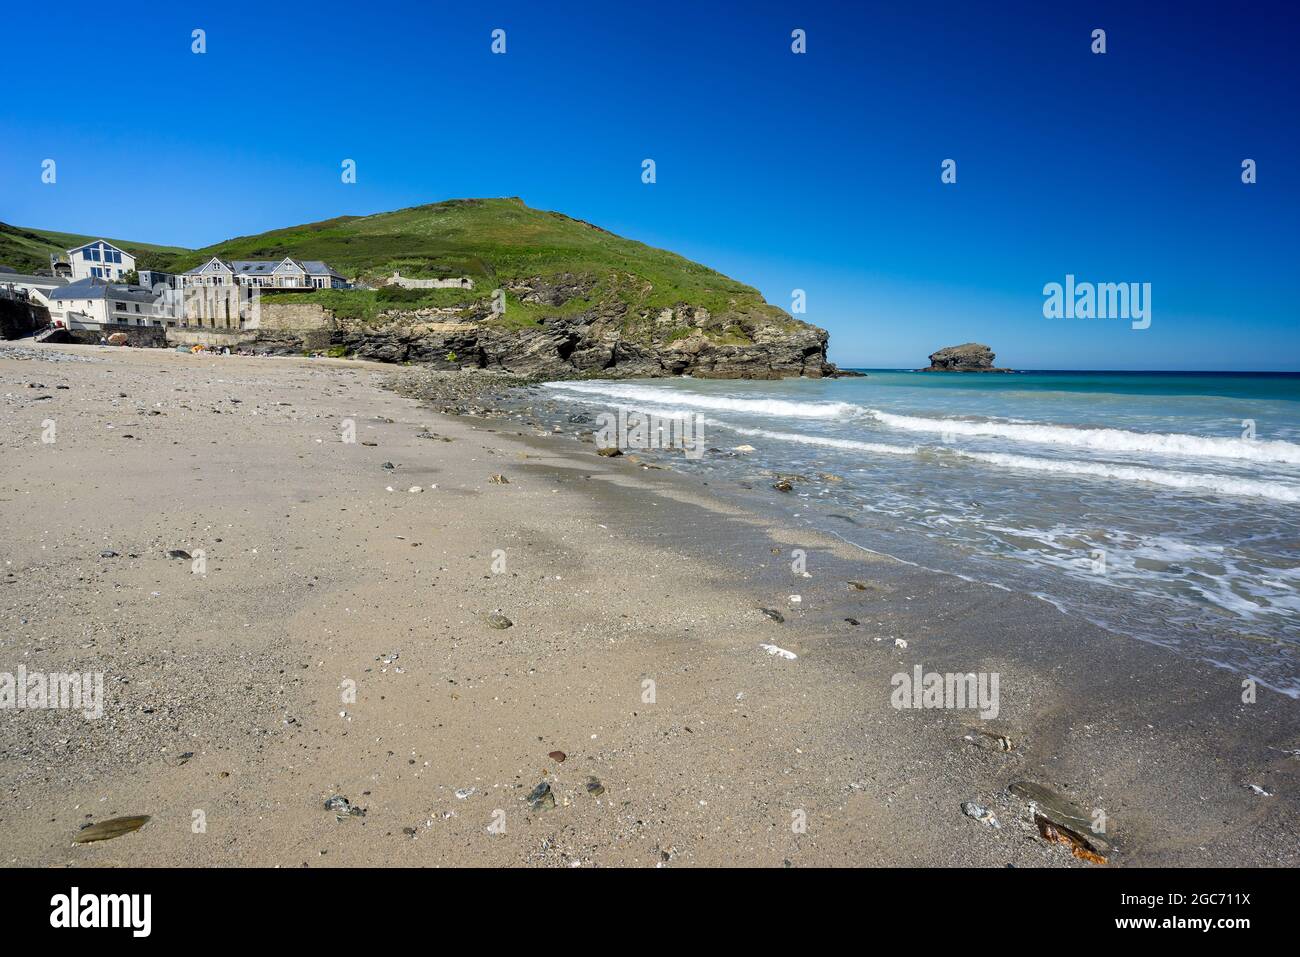 Journée de Summers sur la plage de sable doré de Portreath près de Redruth Cornwall Angleterre Royaume-Uni Europe Banque D'Images